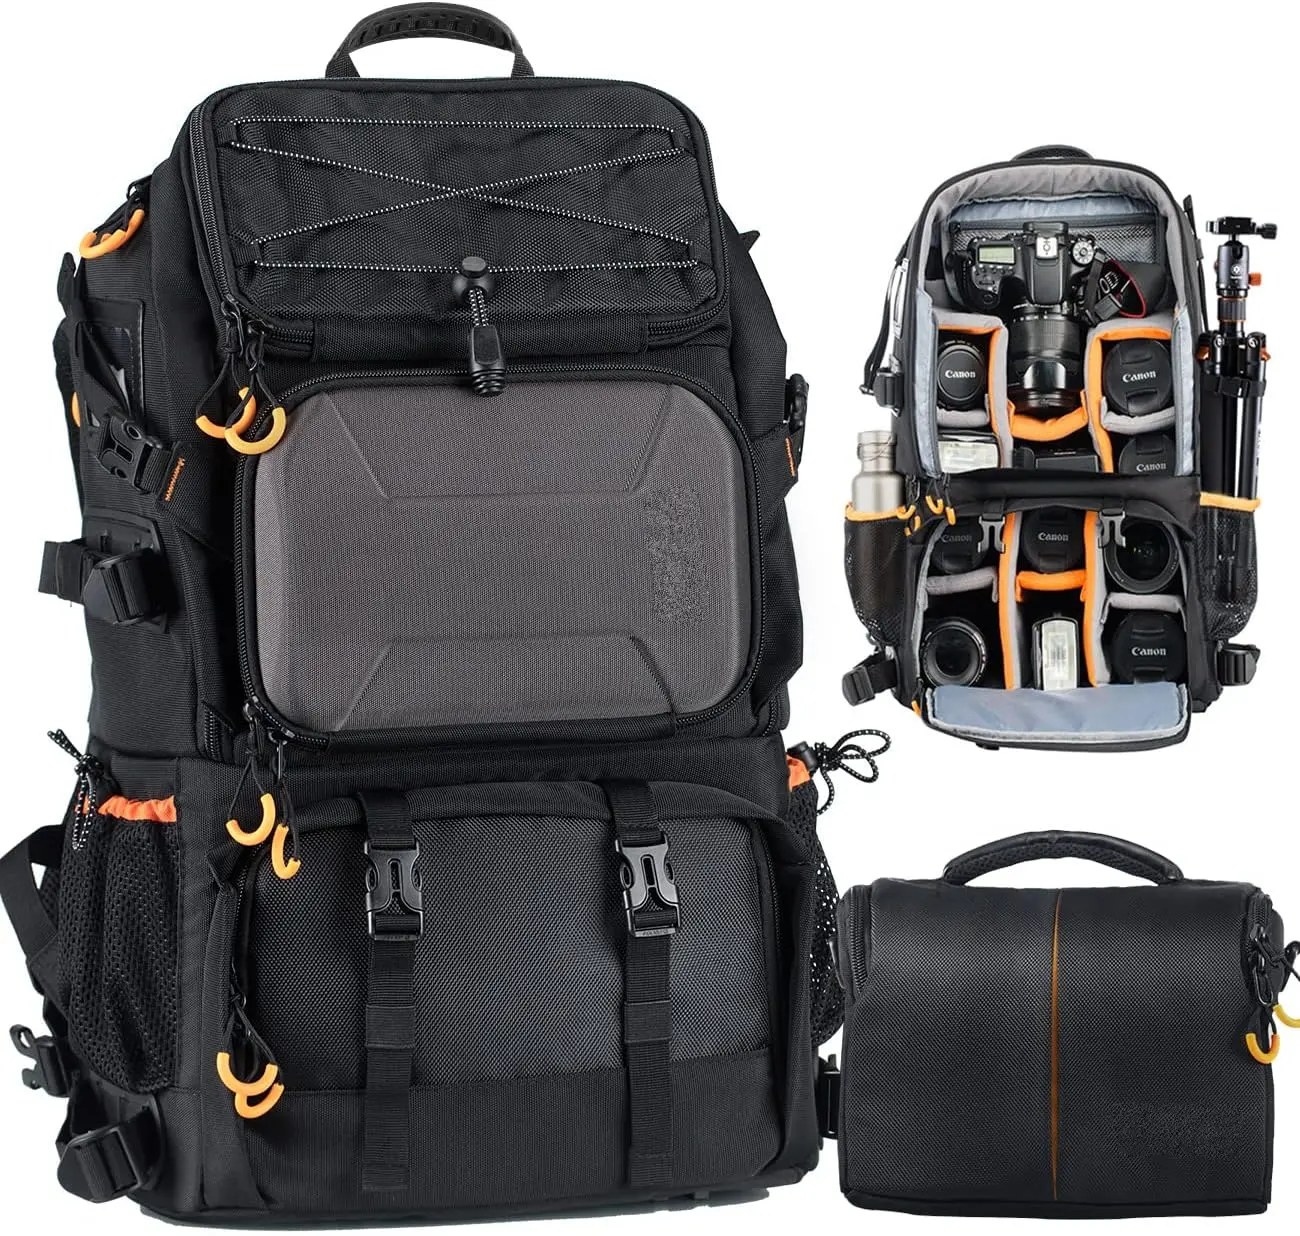 2 sacs en 1 sac à dos pour appareil photo grand avec compartiment pour ordinateur portable 15.6 "housse de pluie imperméable sac à dos pour appareil photo de randonnée extra large